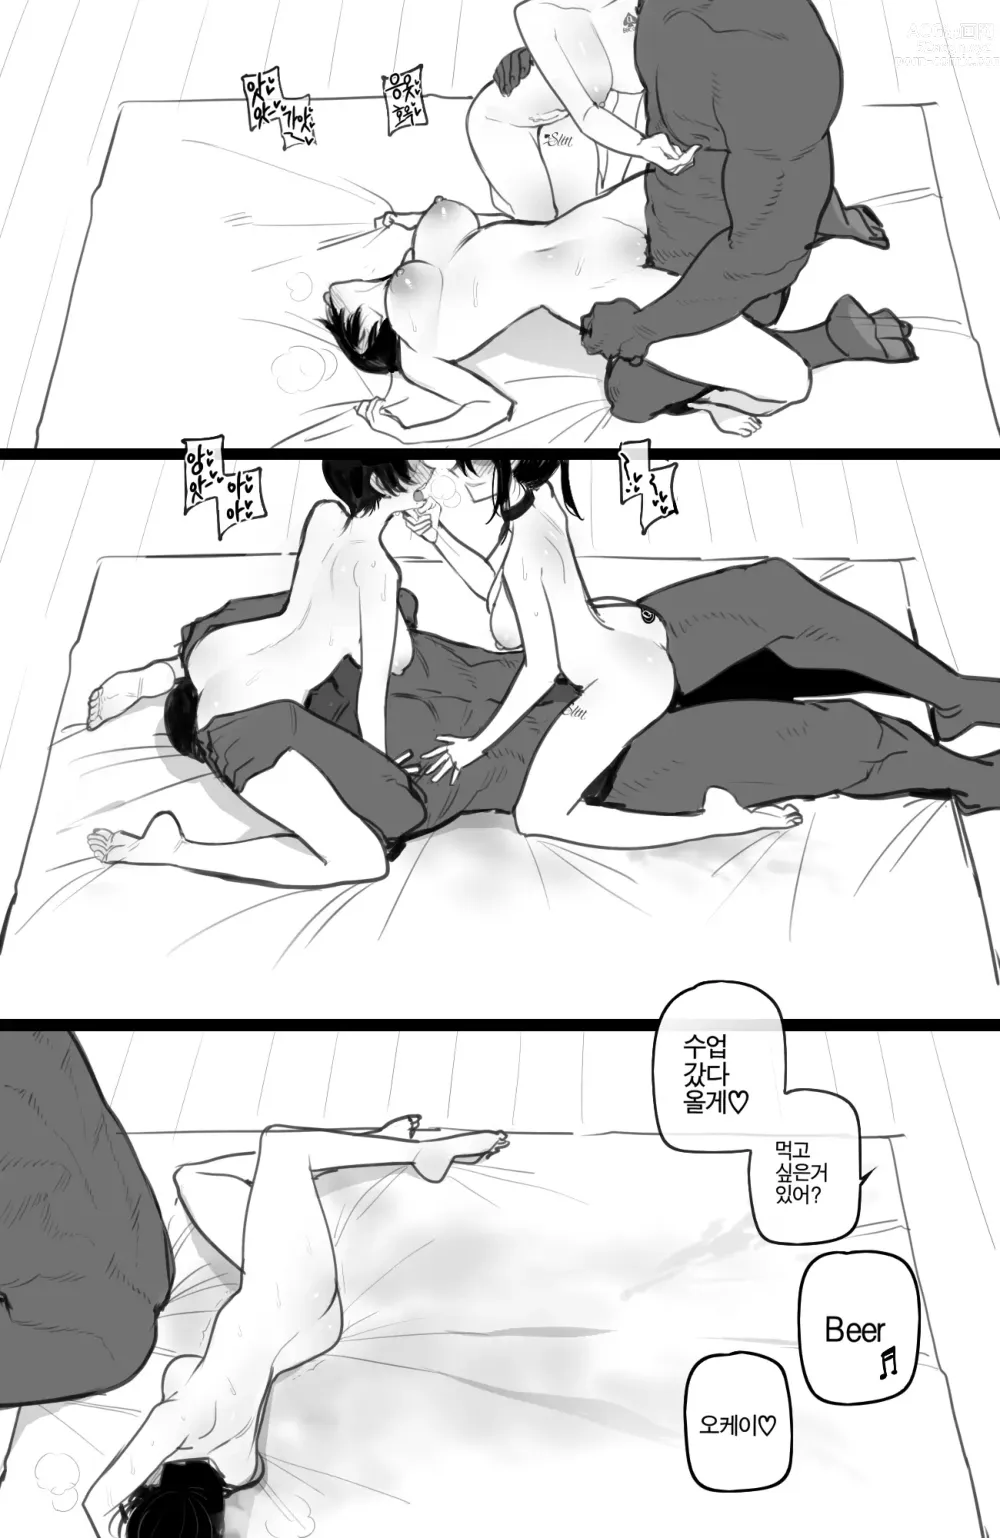 Page 21 of manga 06/2023 reward